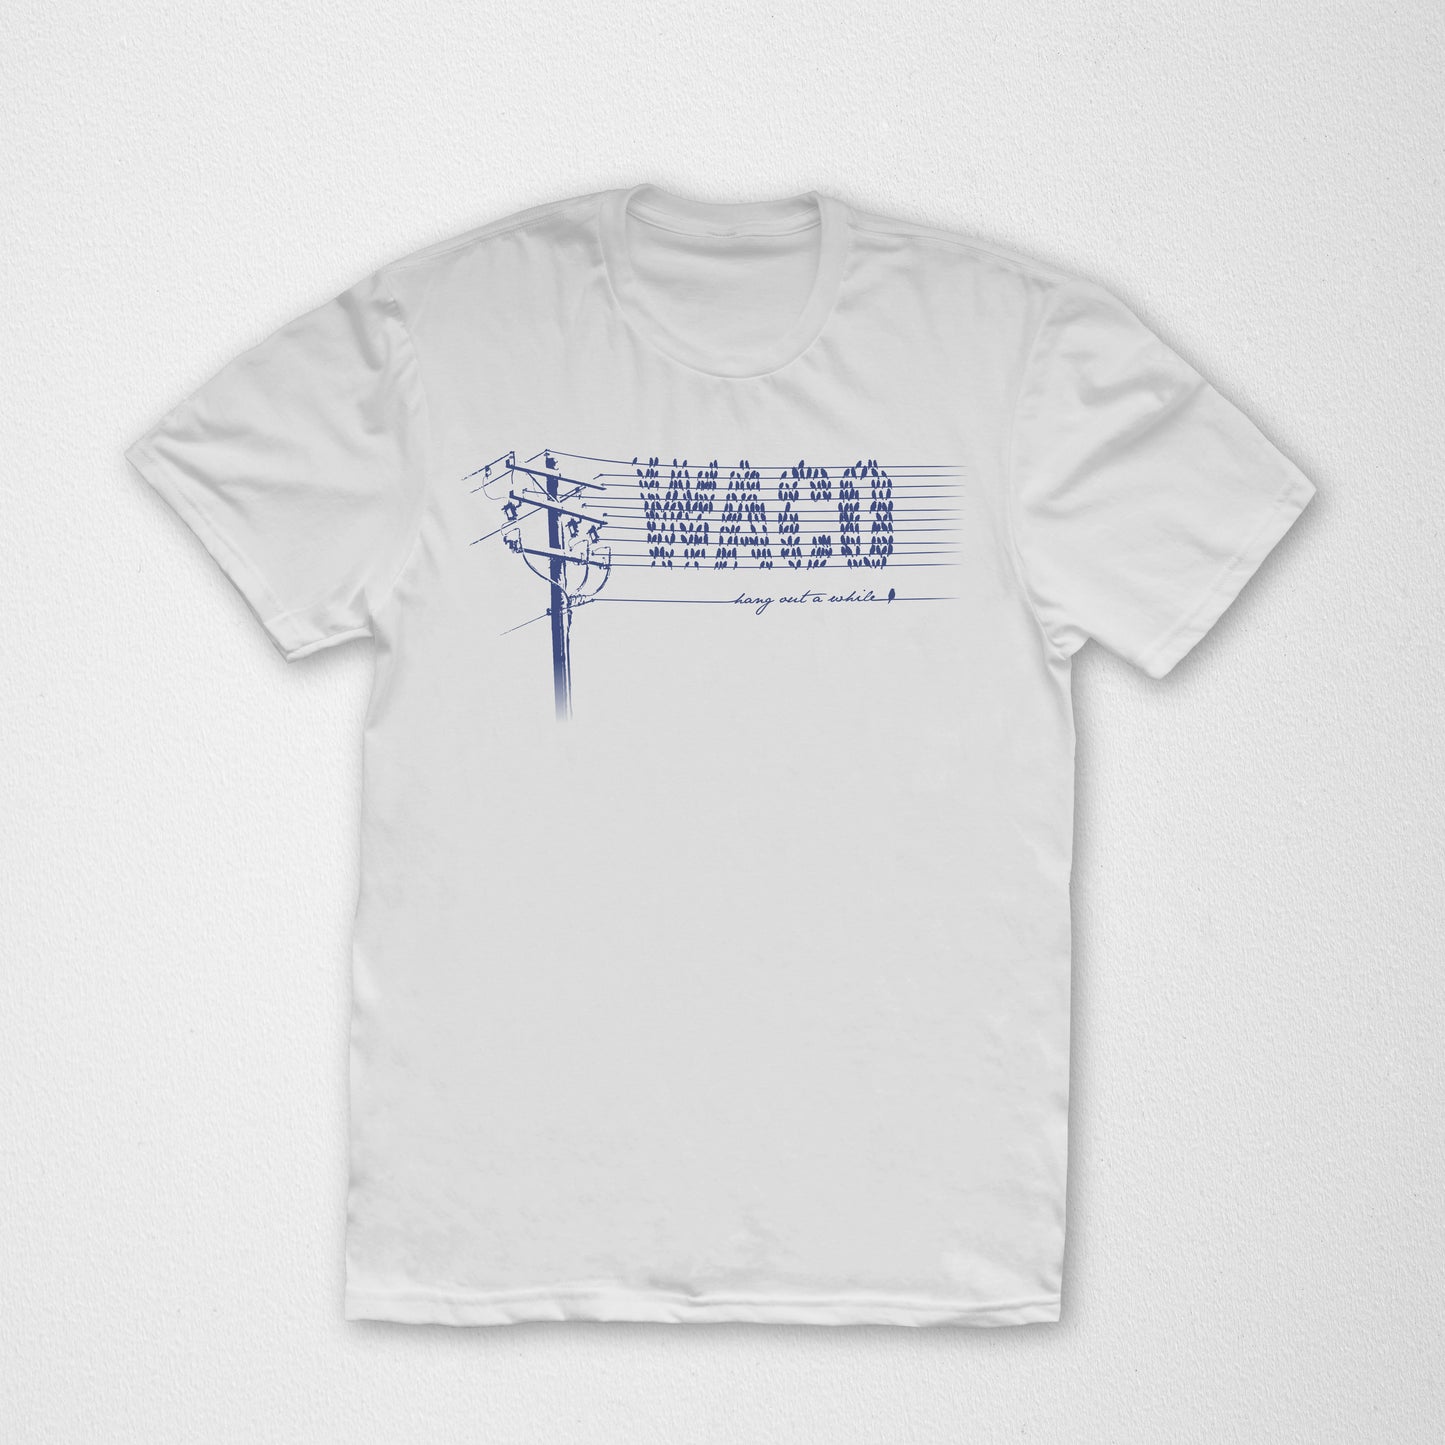 Waco Wires